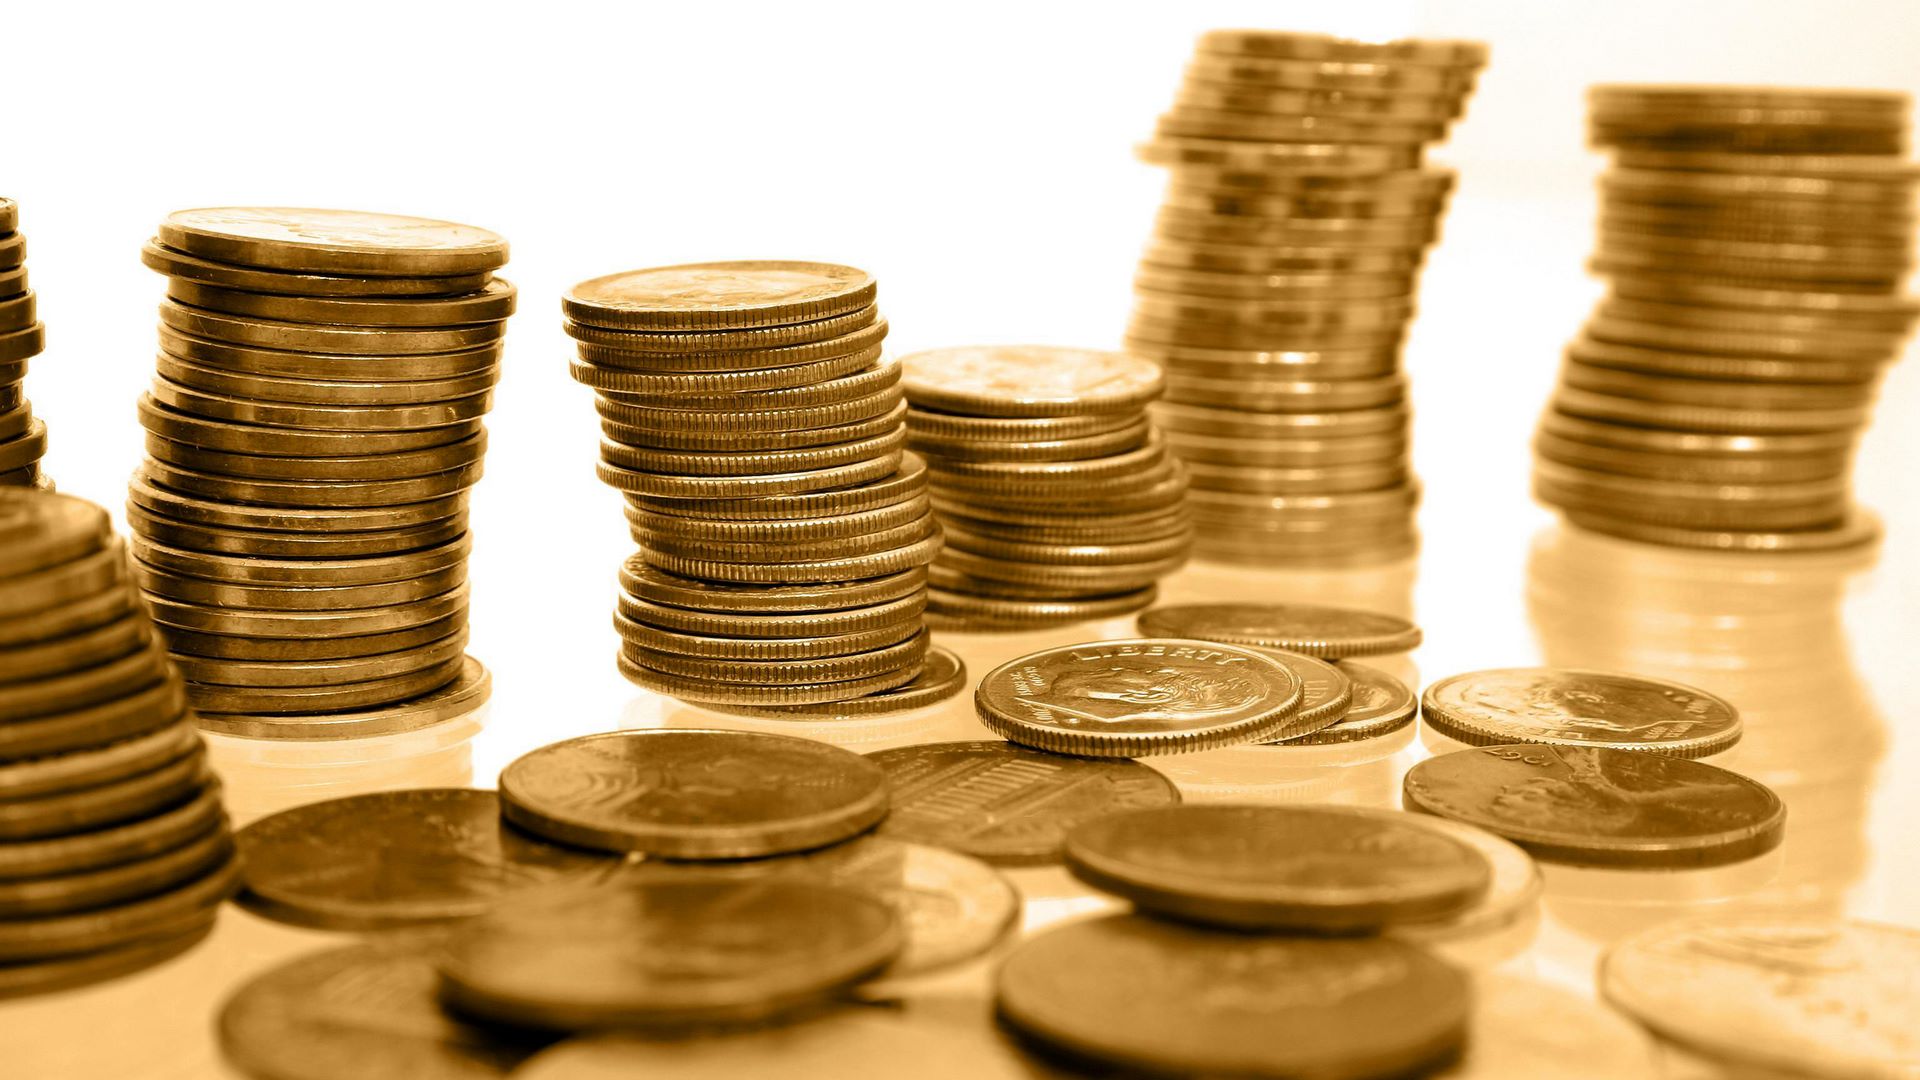 قیمت سکه امروز ۱۵ فروردین ۹۸ به ۴ میلیون و ۶۵۶ هزار تومان رسید